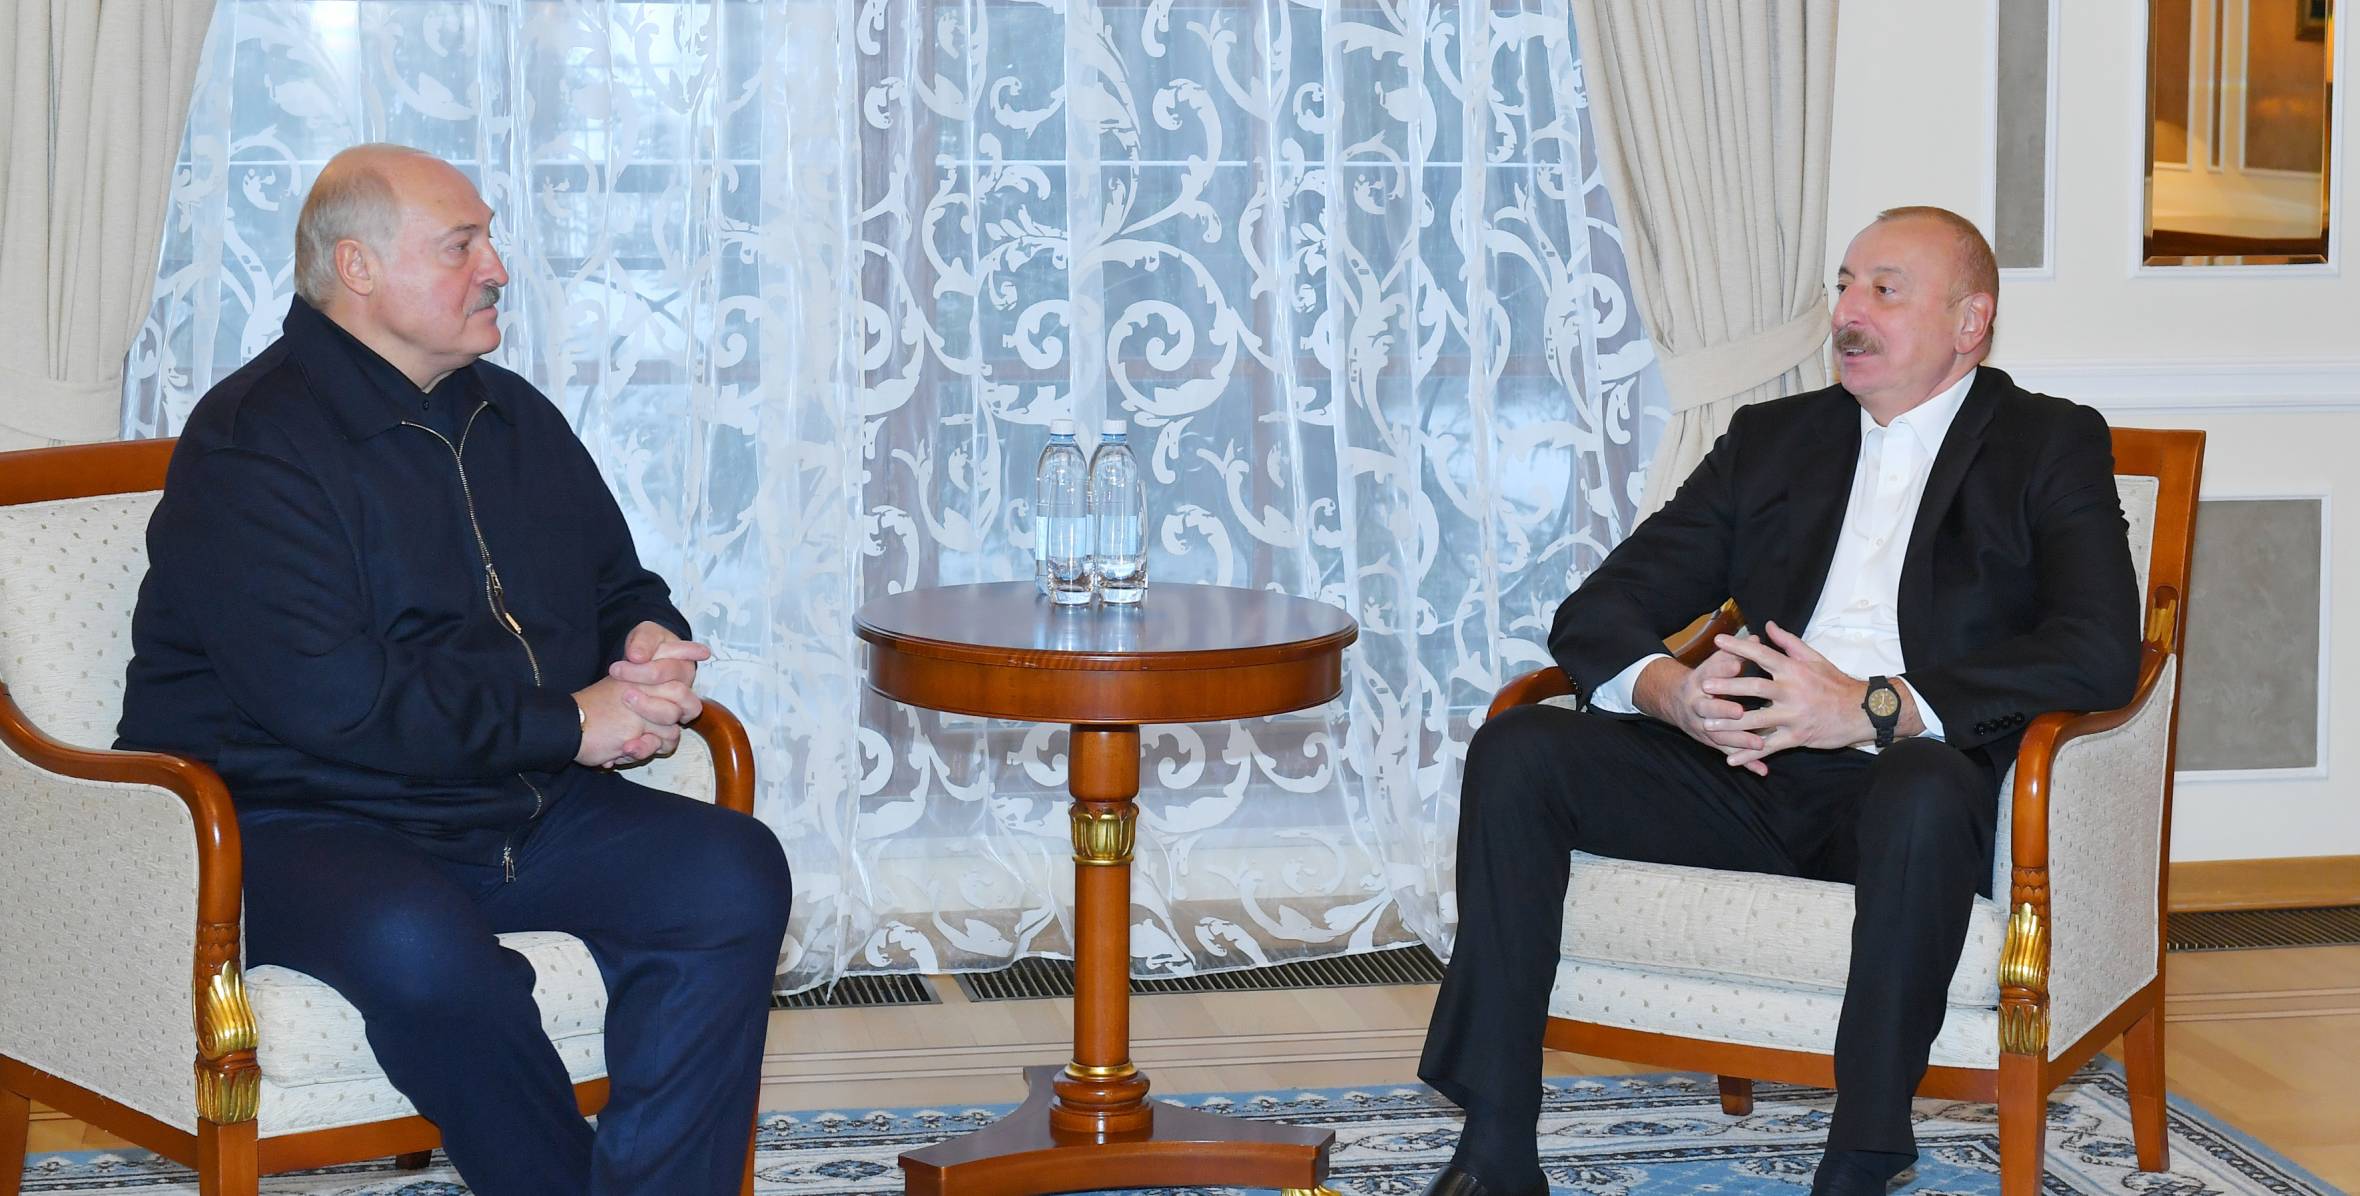 Ilham Aliyev met with President of Belarus Aleksandr Lukashenko in Saint Petersburg